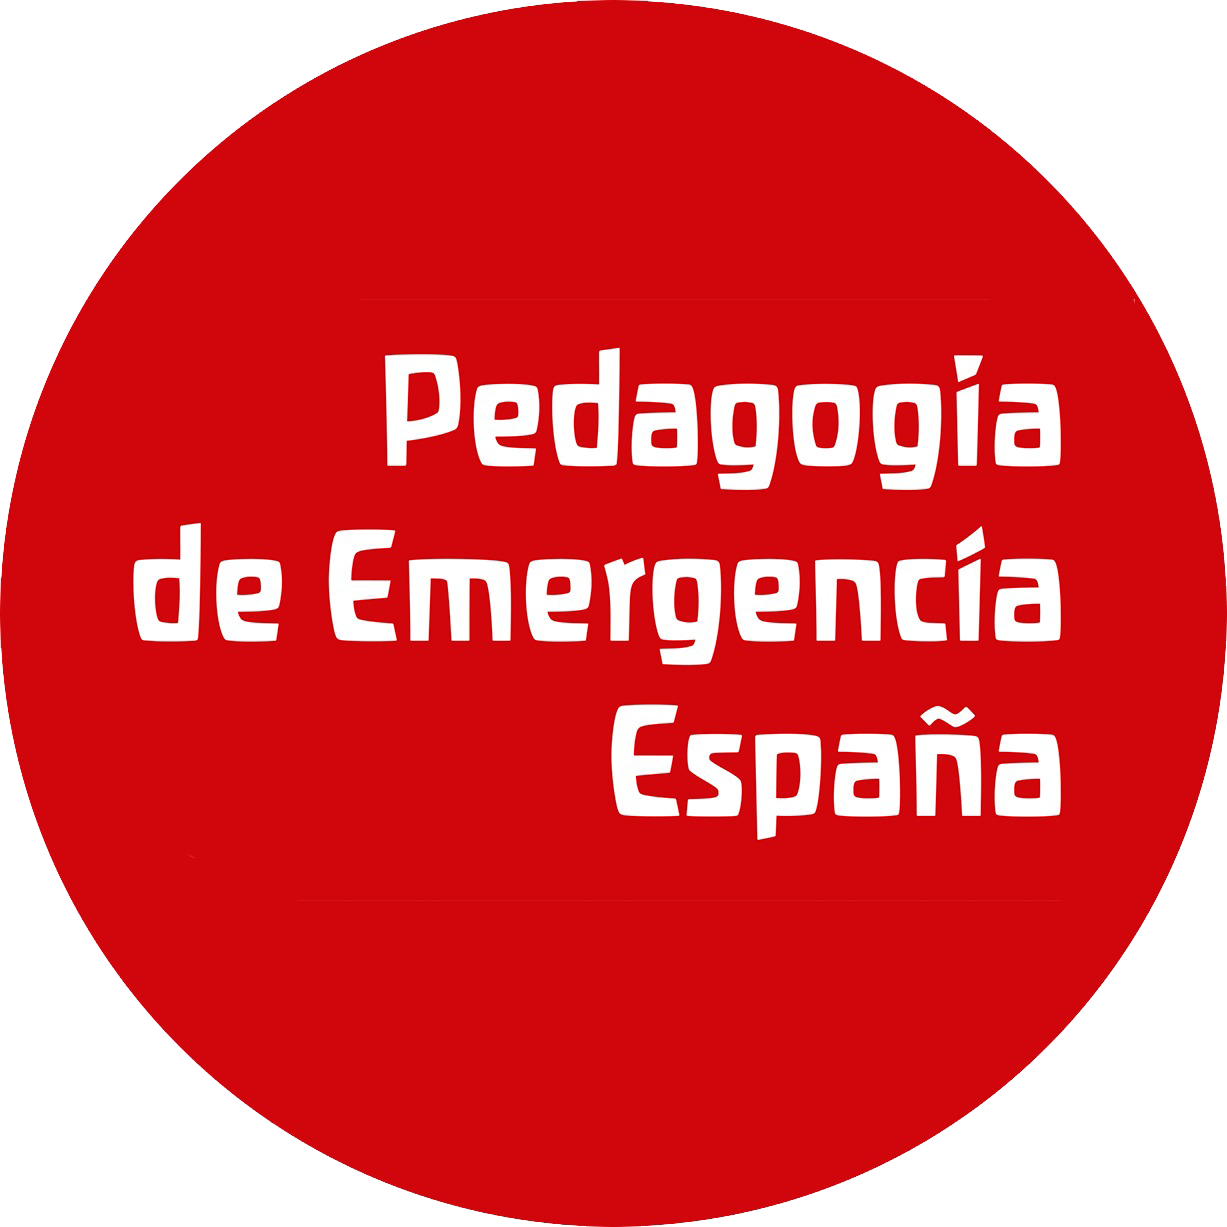 Pedagogia de Emergencia